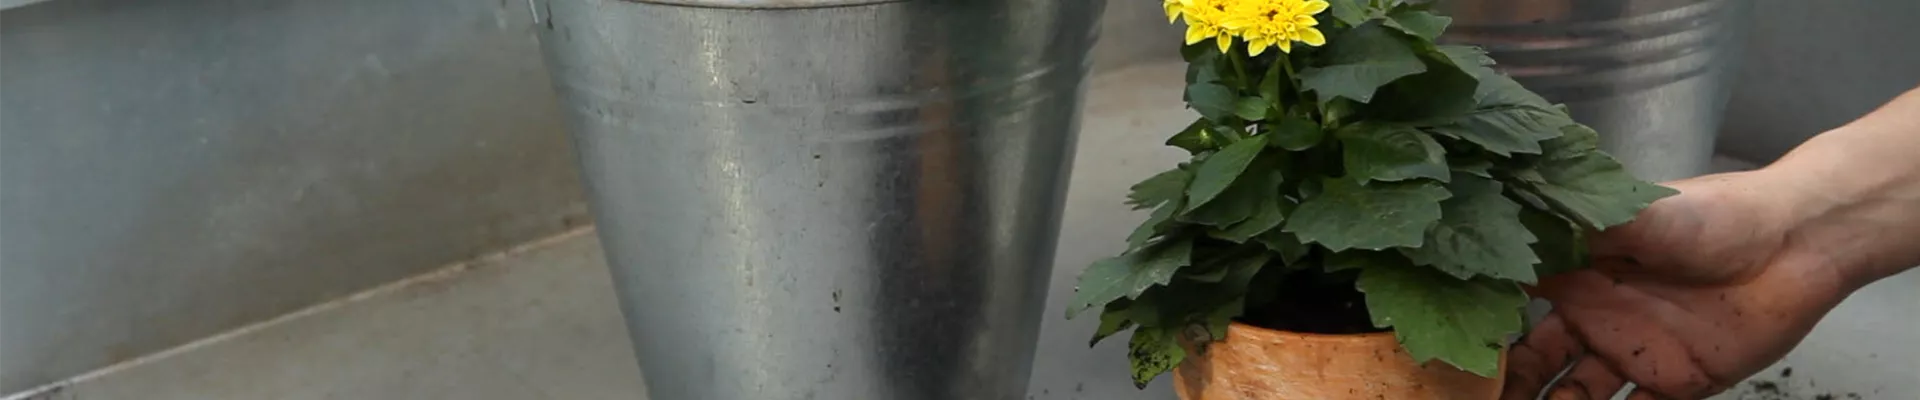 Dahlie - Einpflanzen in ein Gefäß (thumbnail).jpg